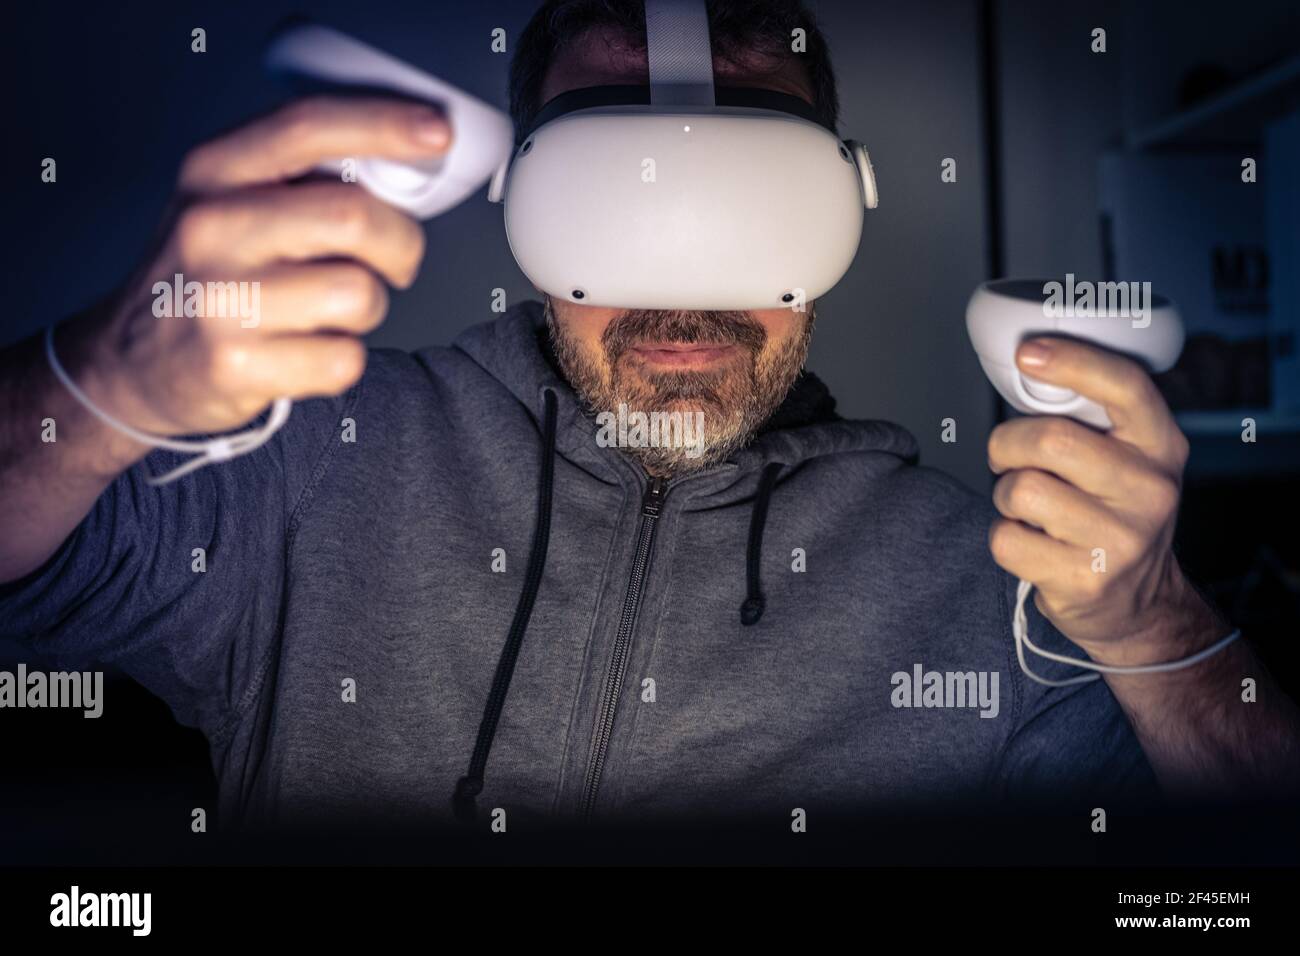 Homme jouant avec un appareil de réalité virtuelle. Cyber-punk ambiance futuriste, expérience immersive avec jeu vidéo et technologie VR 3D Viewer. Personnes utilisant nex Banque D'Images